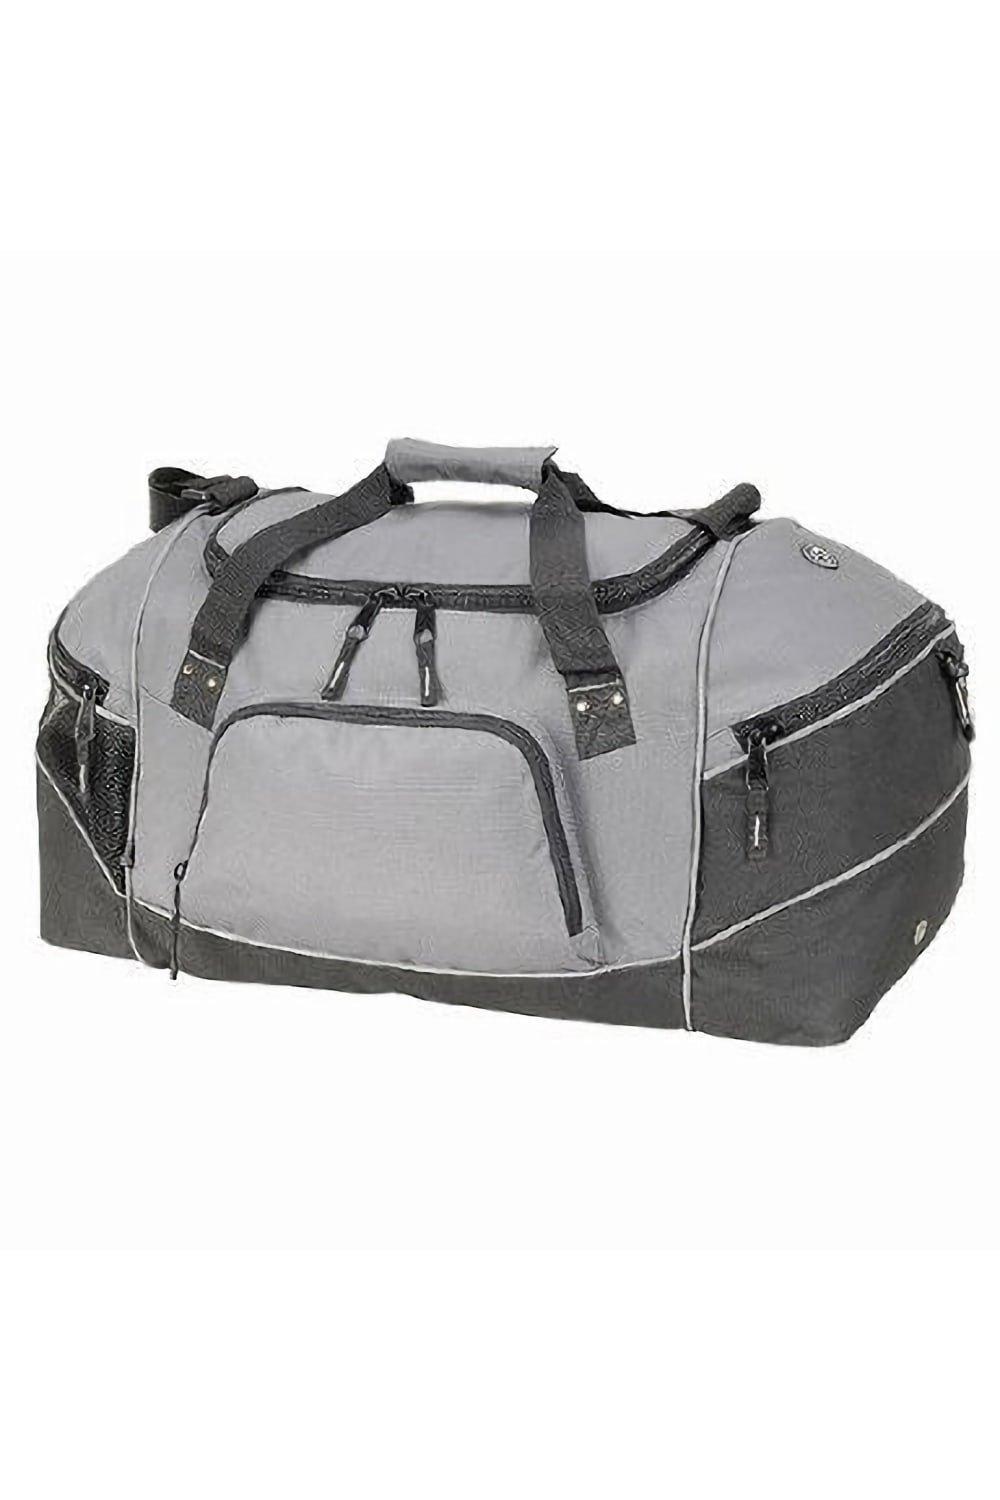 Универсальная спортивная сумка Daytona (50 литров) (2 шт.) Shugon, серый